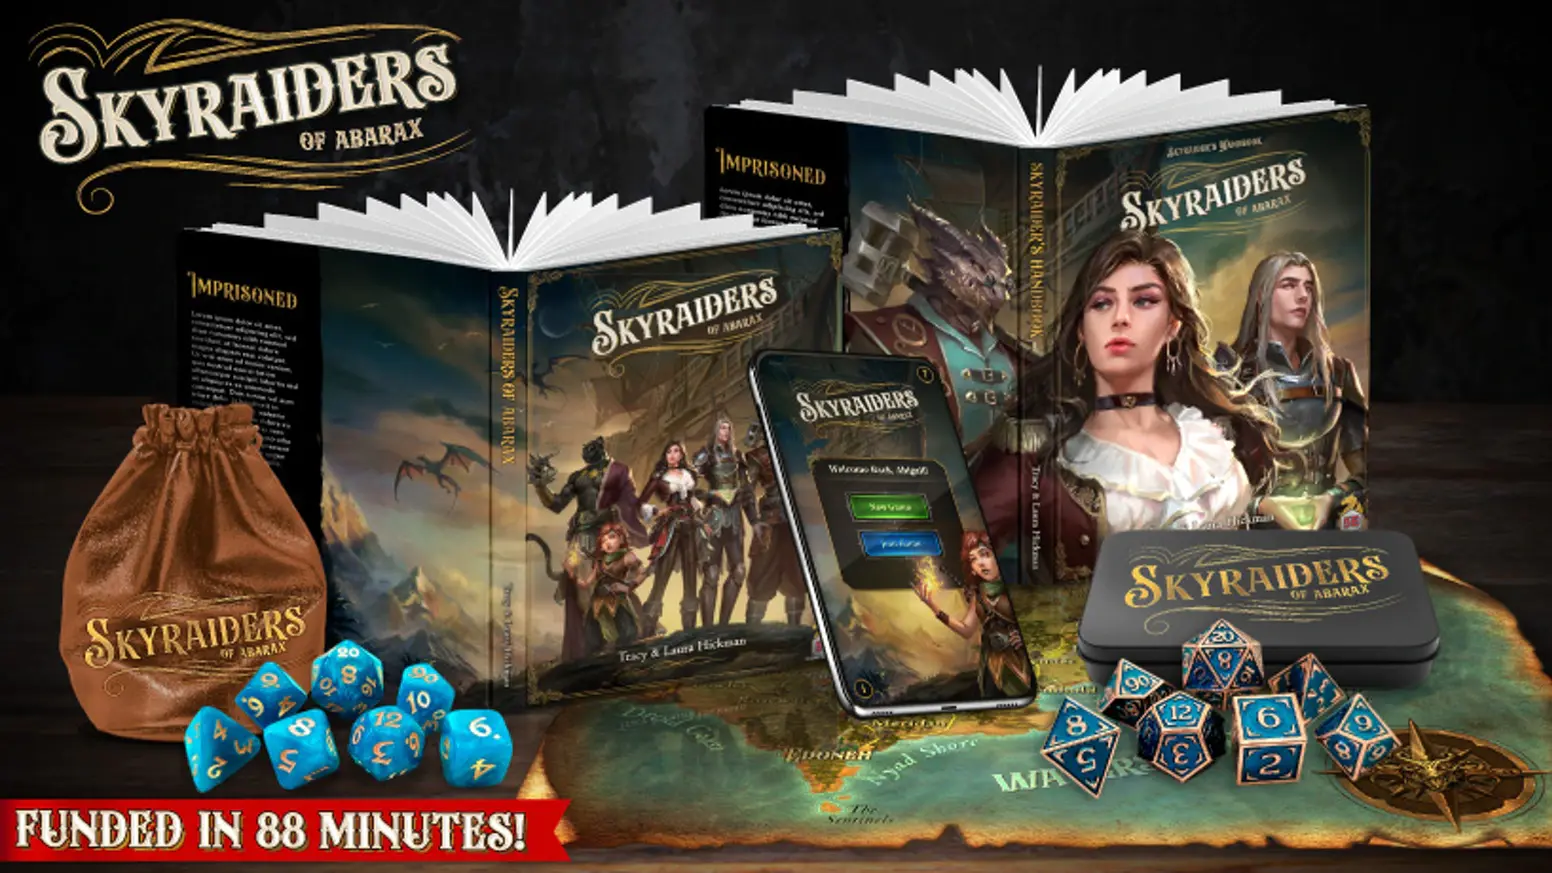 Maggiori informazioni riguardo "Cosa c'è di Nuovo su Kickstarter: Skyriders of Abarax"